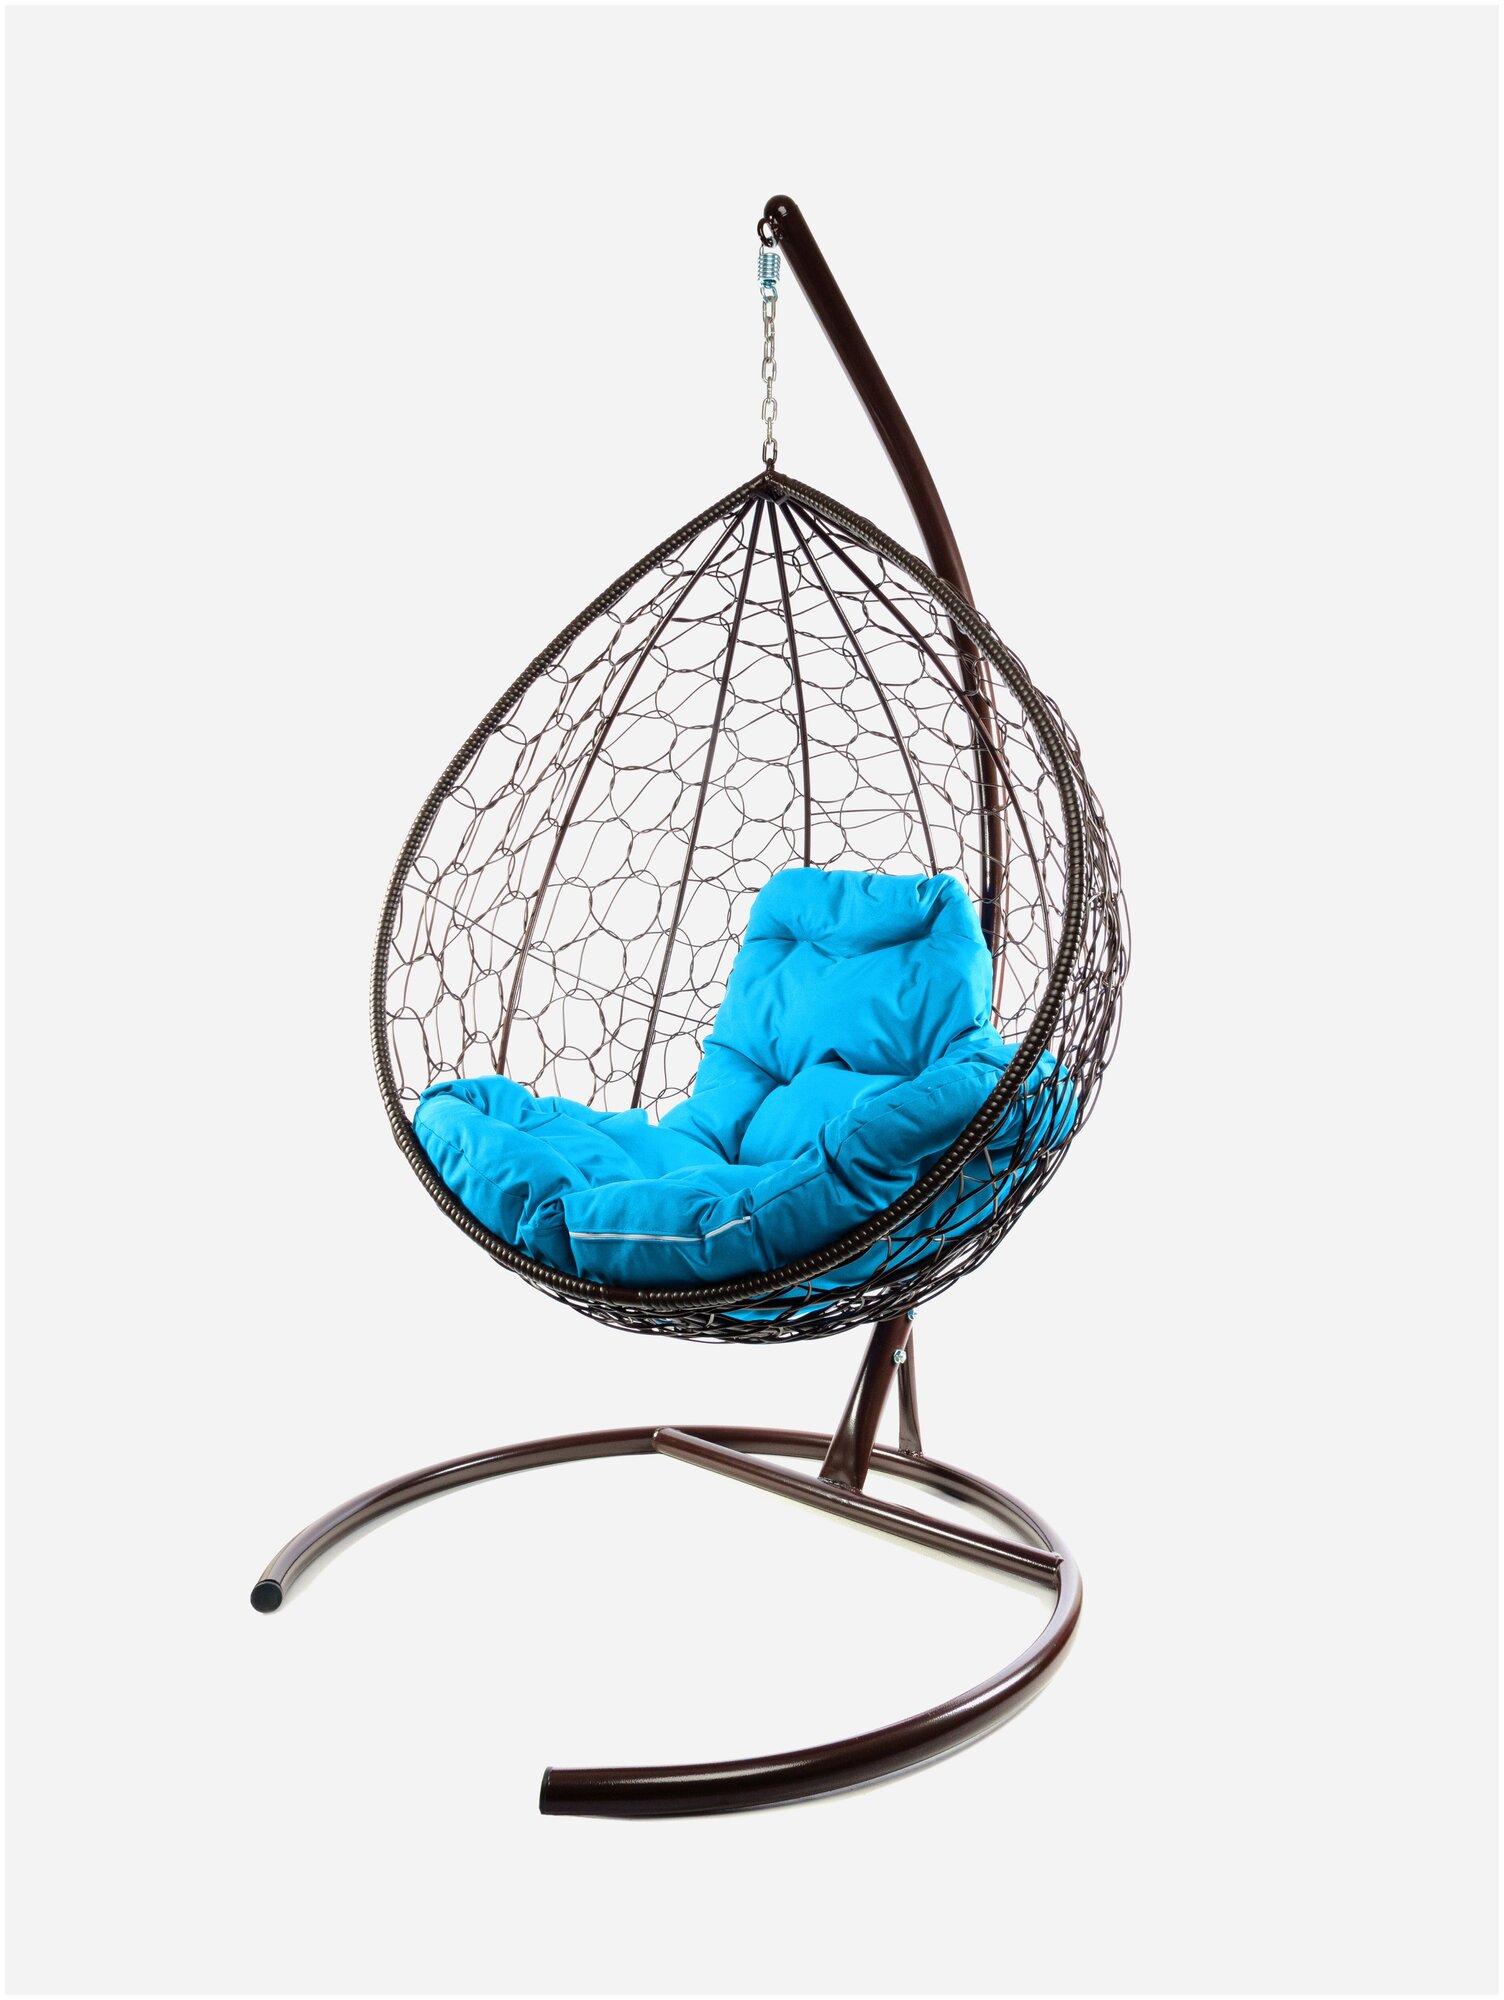 Подвесное кресло M-Group капля ротанг коричневое, голубая подушка - фотография № 4